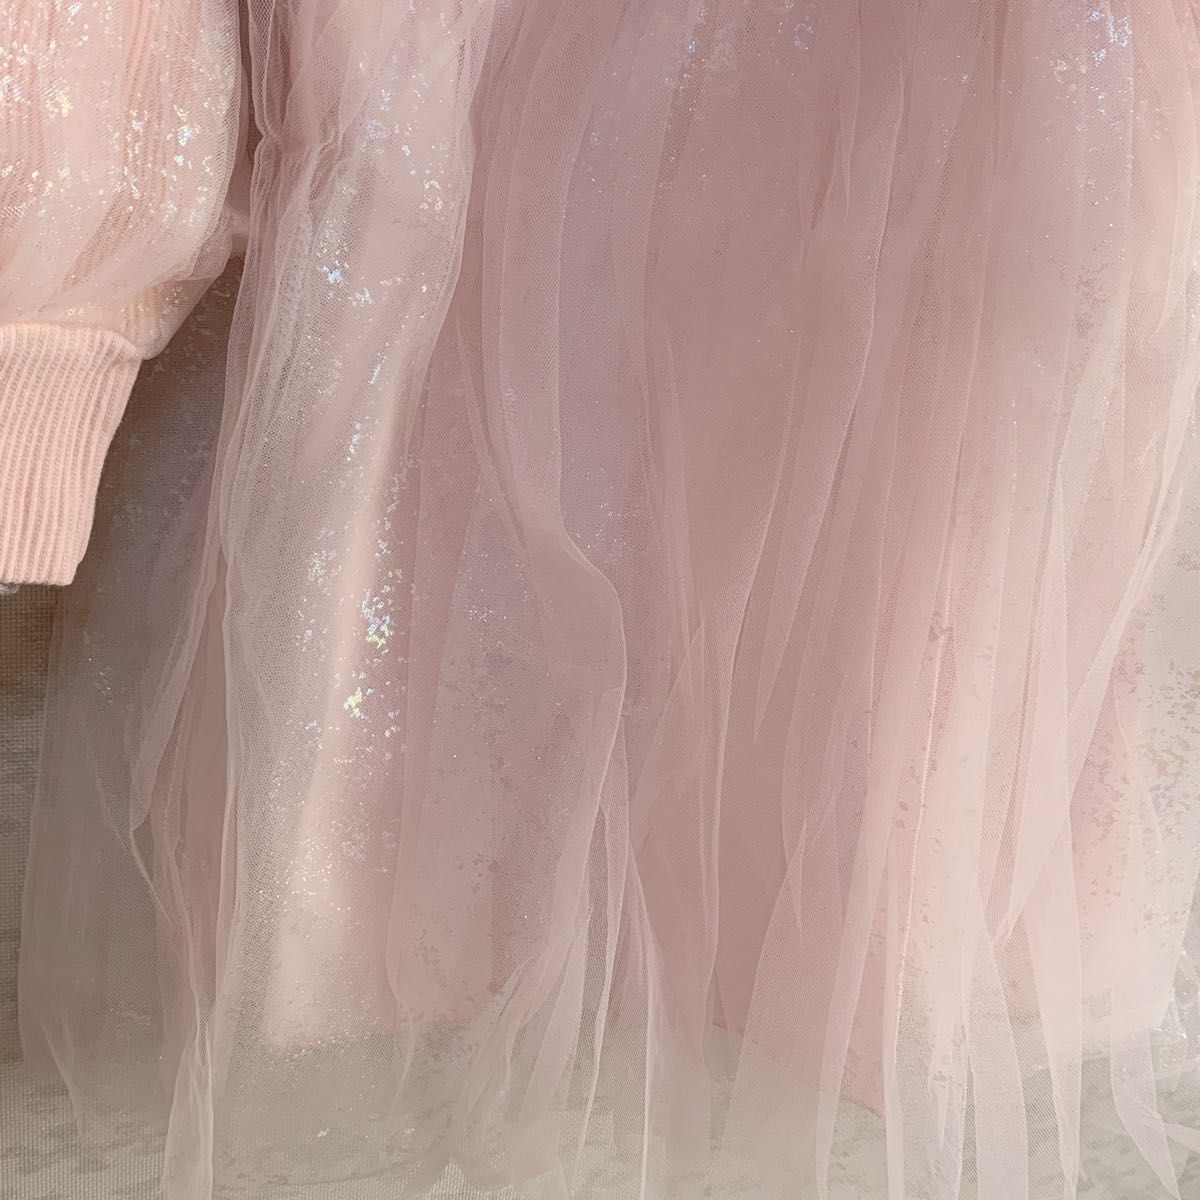 120 ピンク キッズ ハイネック キラキラ チュール ワンピース フォーマル 女の子 スカート 冬  子供ドレス キッズドレス